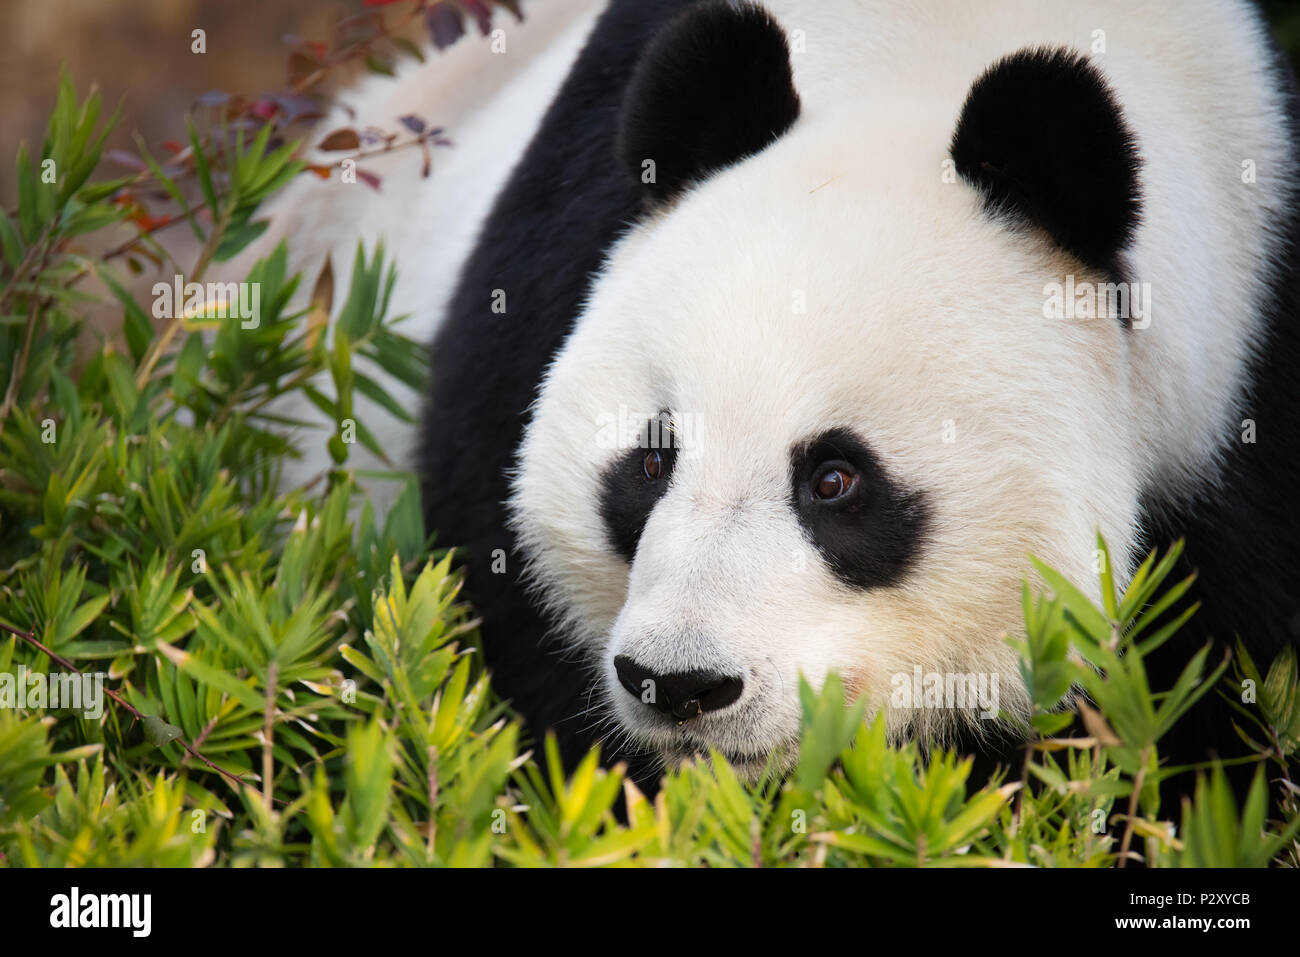 Ein riesiger Panda in einem Zoo in Australien, das ist eine von nur zwei pandas auf Australien. Grosse Pandas sind anfällig für Aussterben in freier Wildbahn. Stockfoto